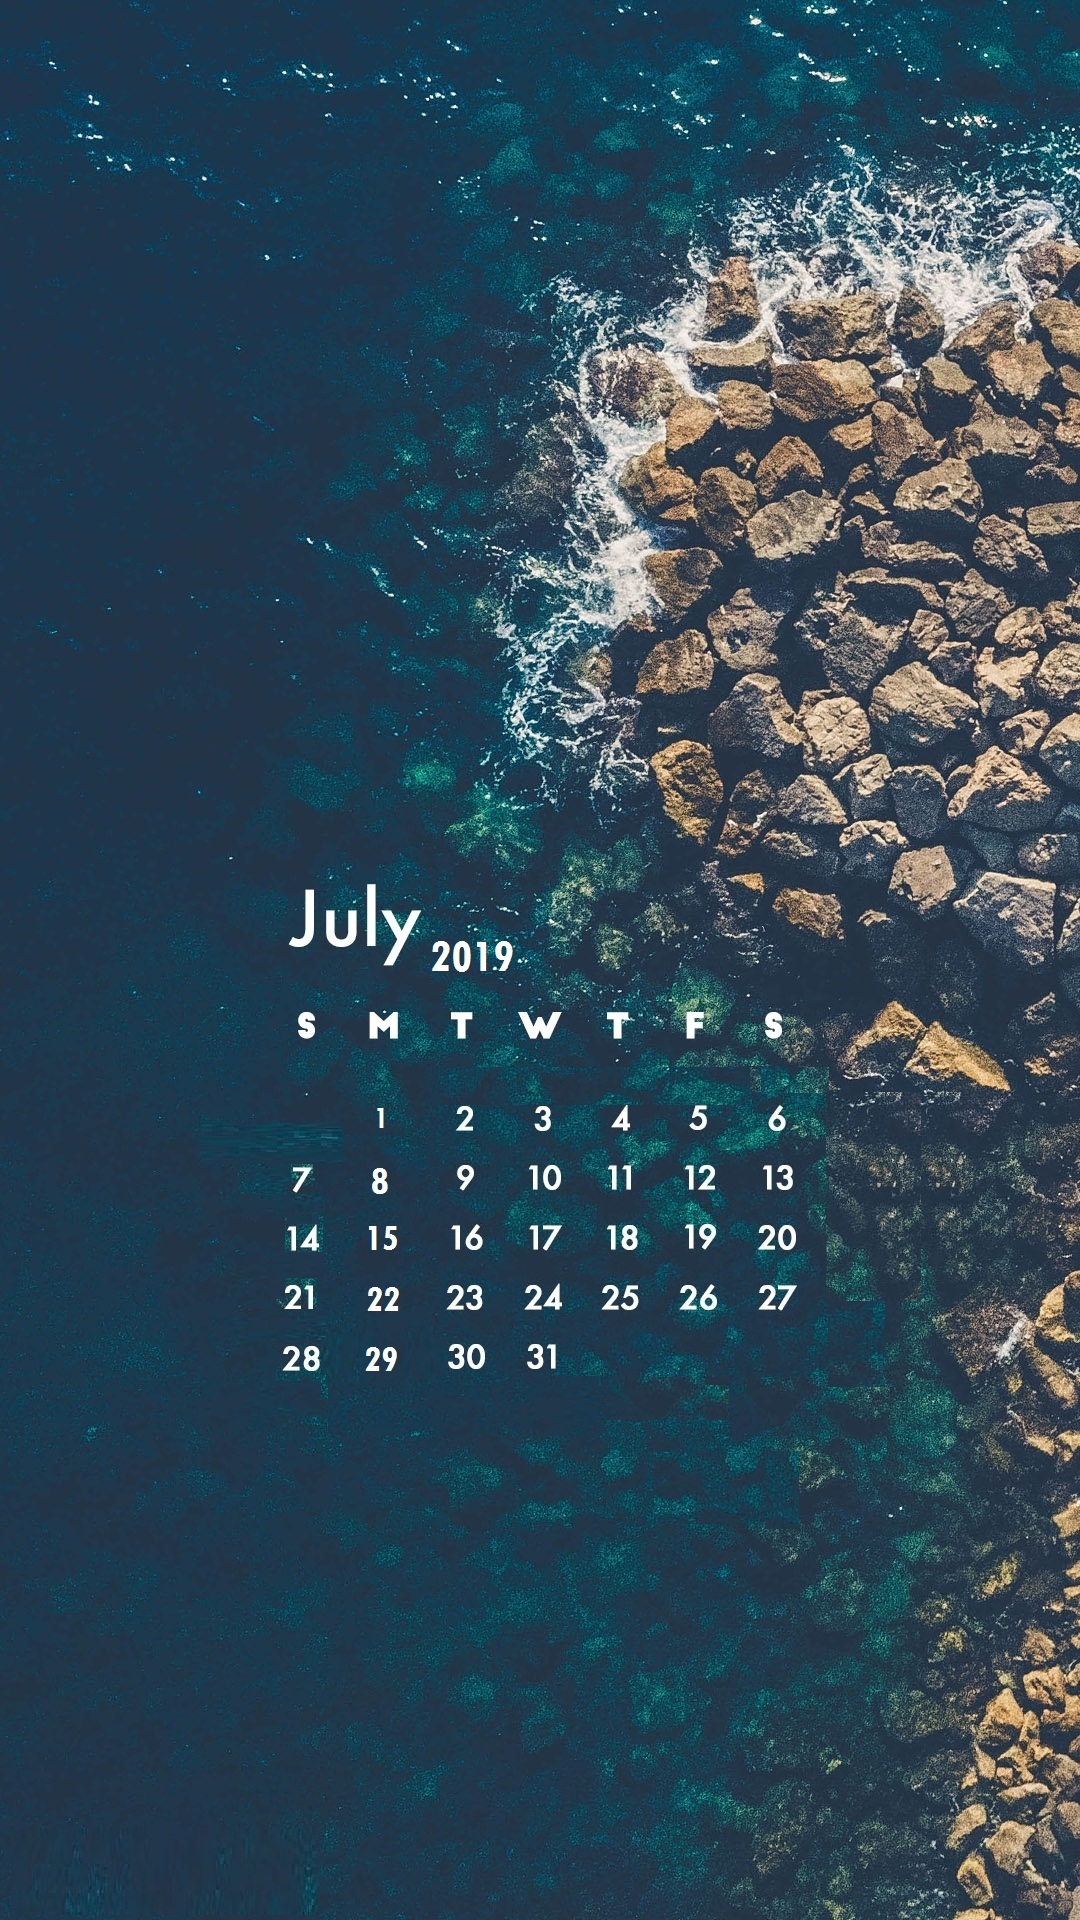 July 2019 iPhone Calendar wallpaper